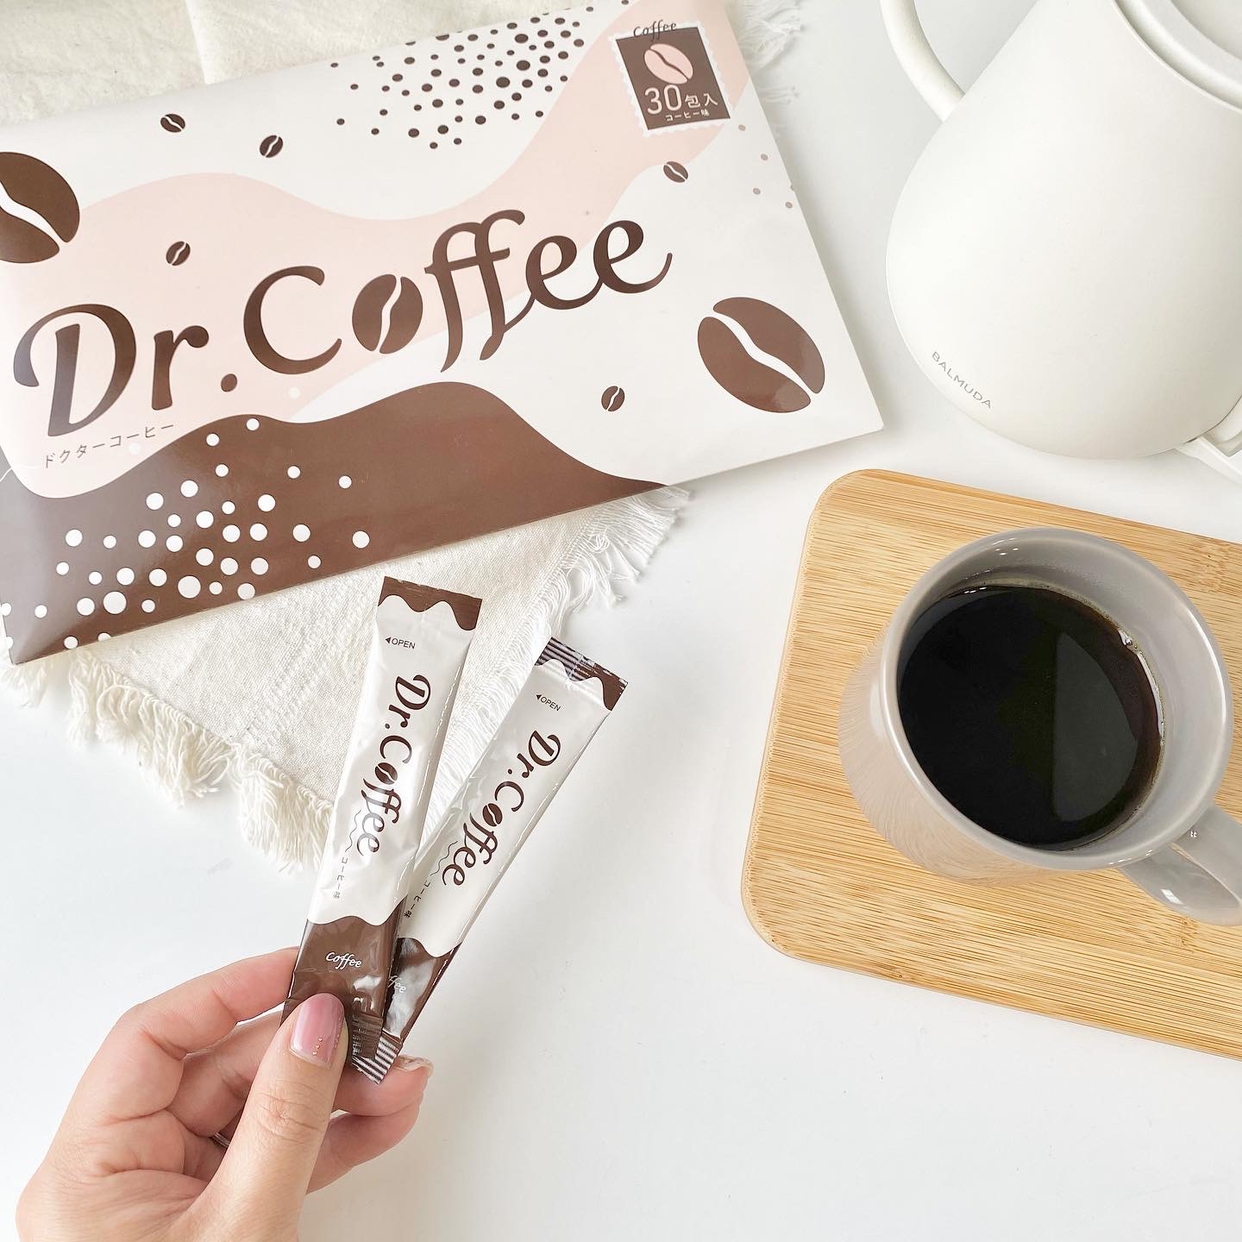 Dr.Coffee(ドクターコーヒー) キリッとコーヒークレンズの良い点・メリットに関するnitaさんの口コミ画像3